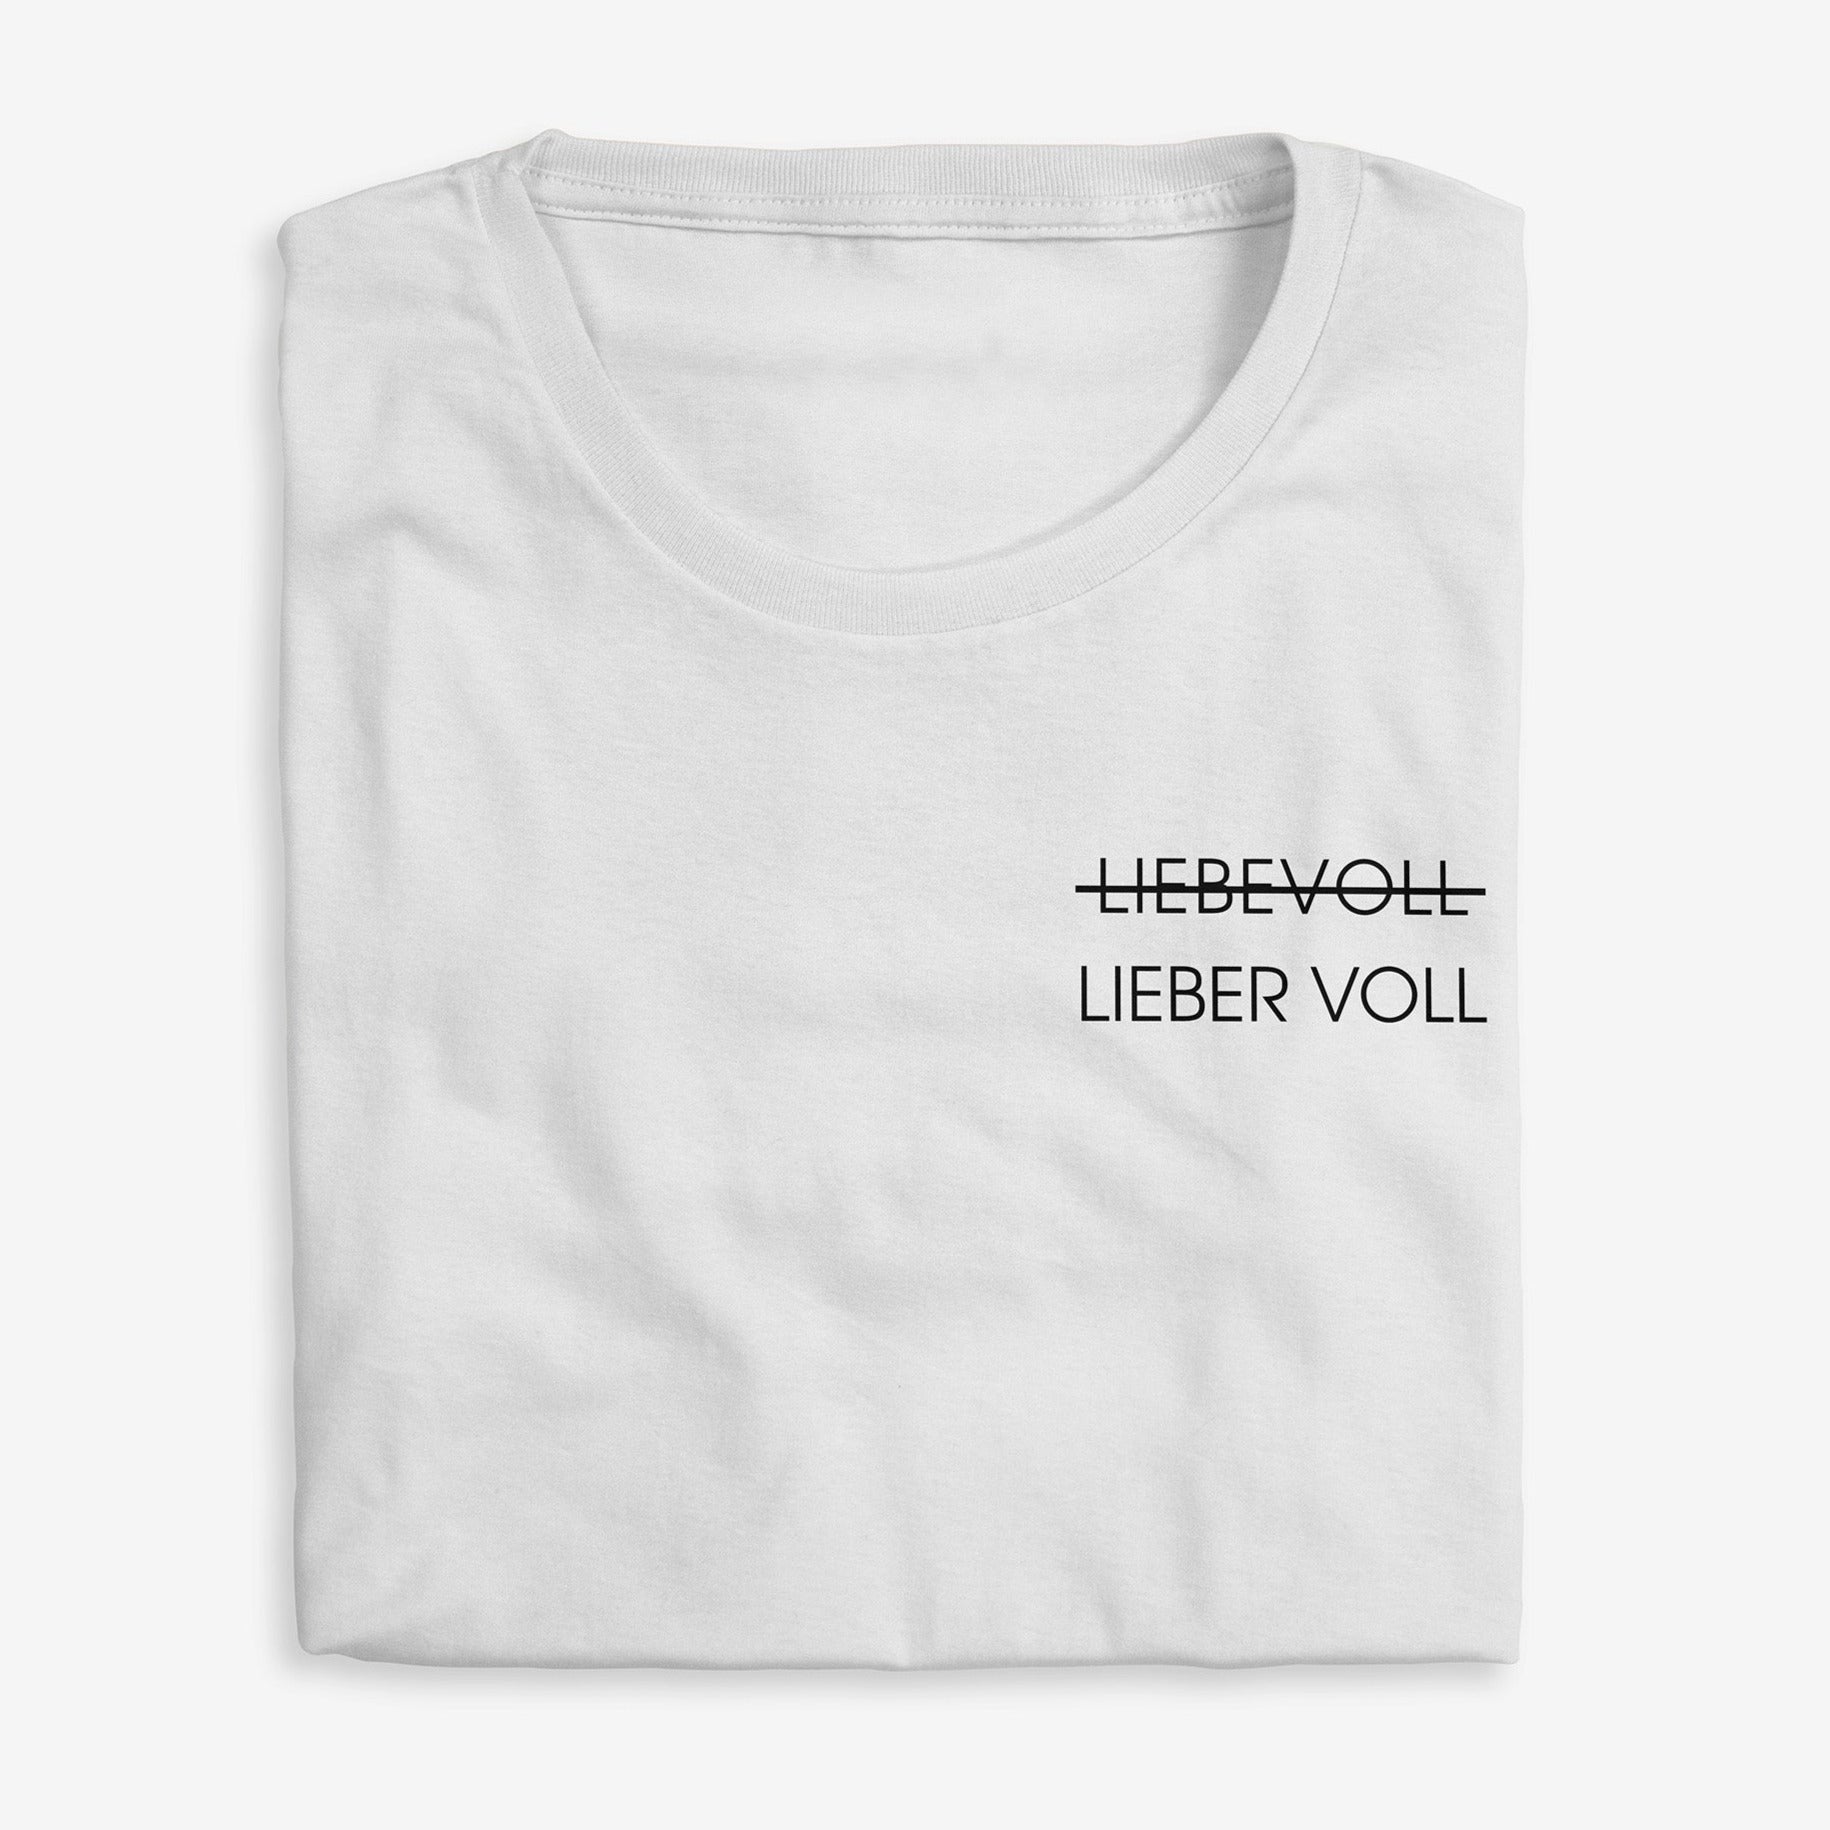 LIEBEVOLL LIEBER VOLL Shirt - Weinspirits